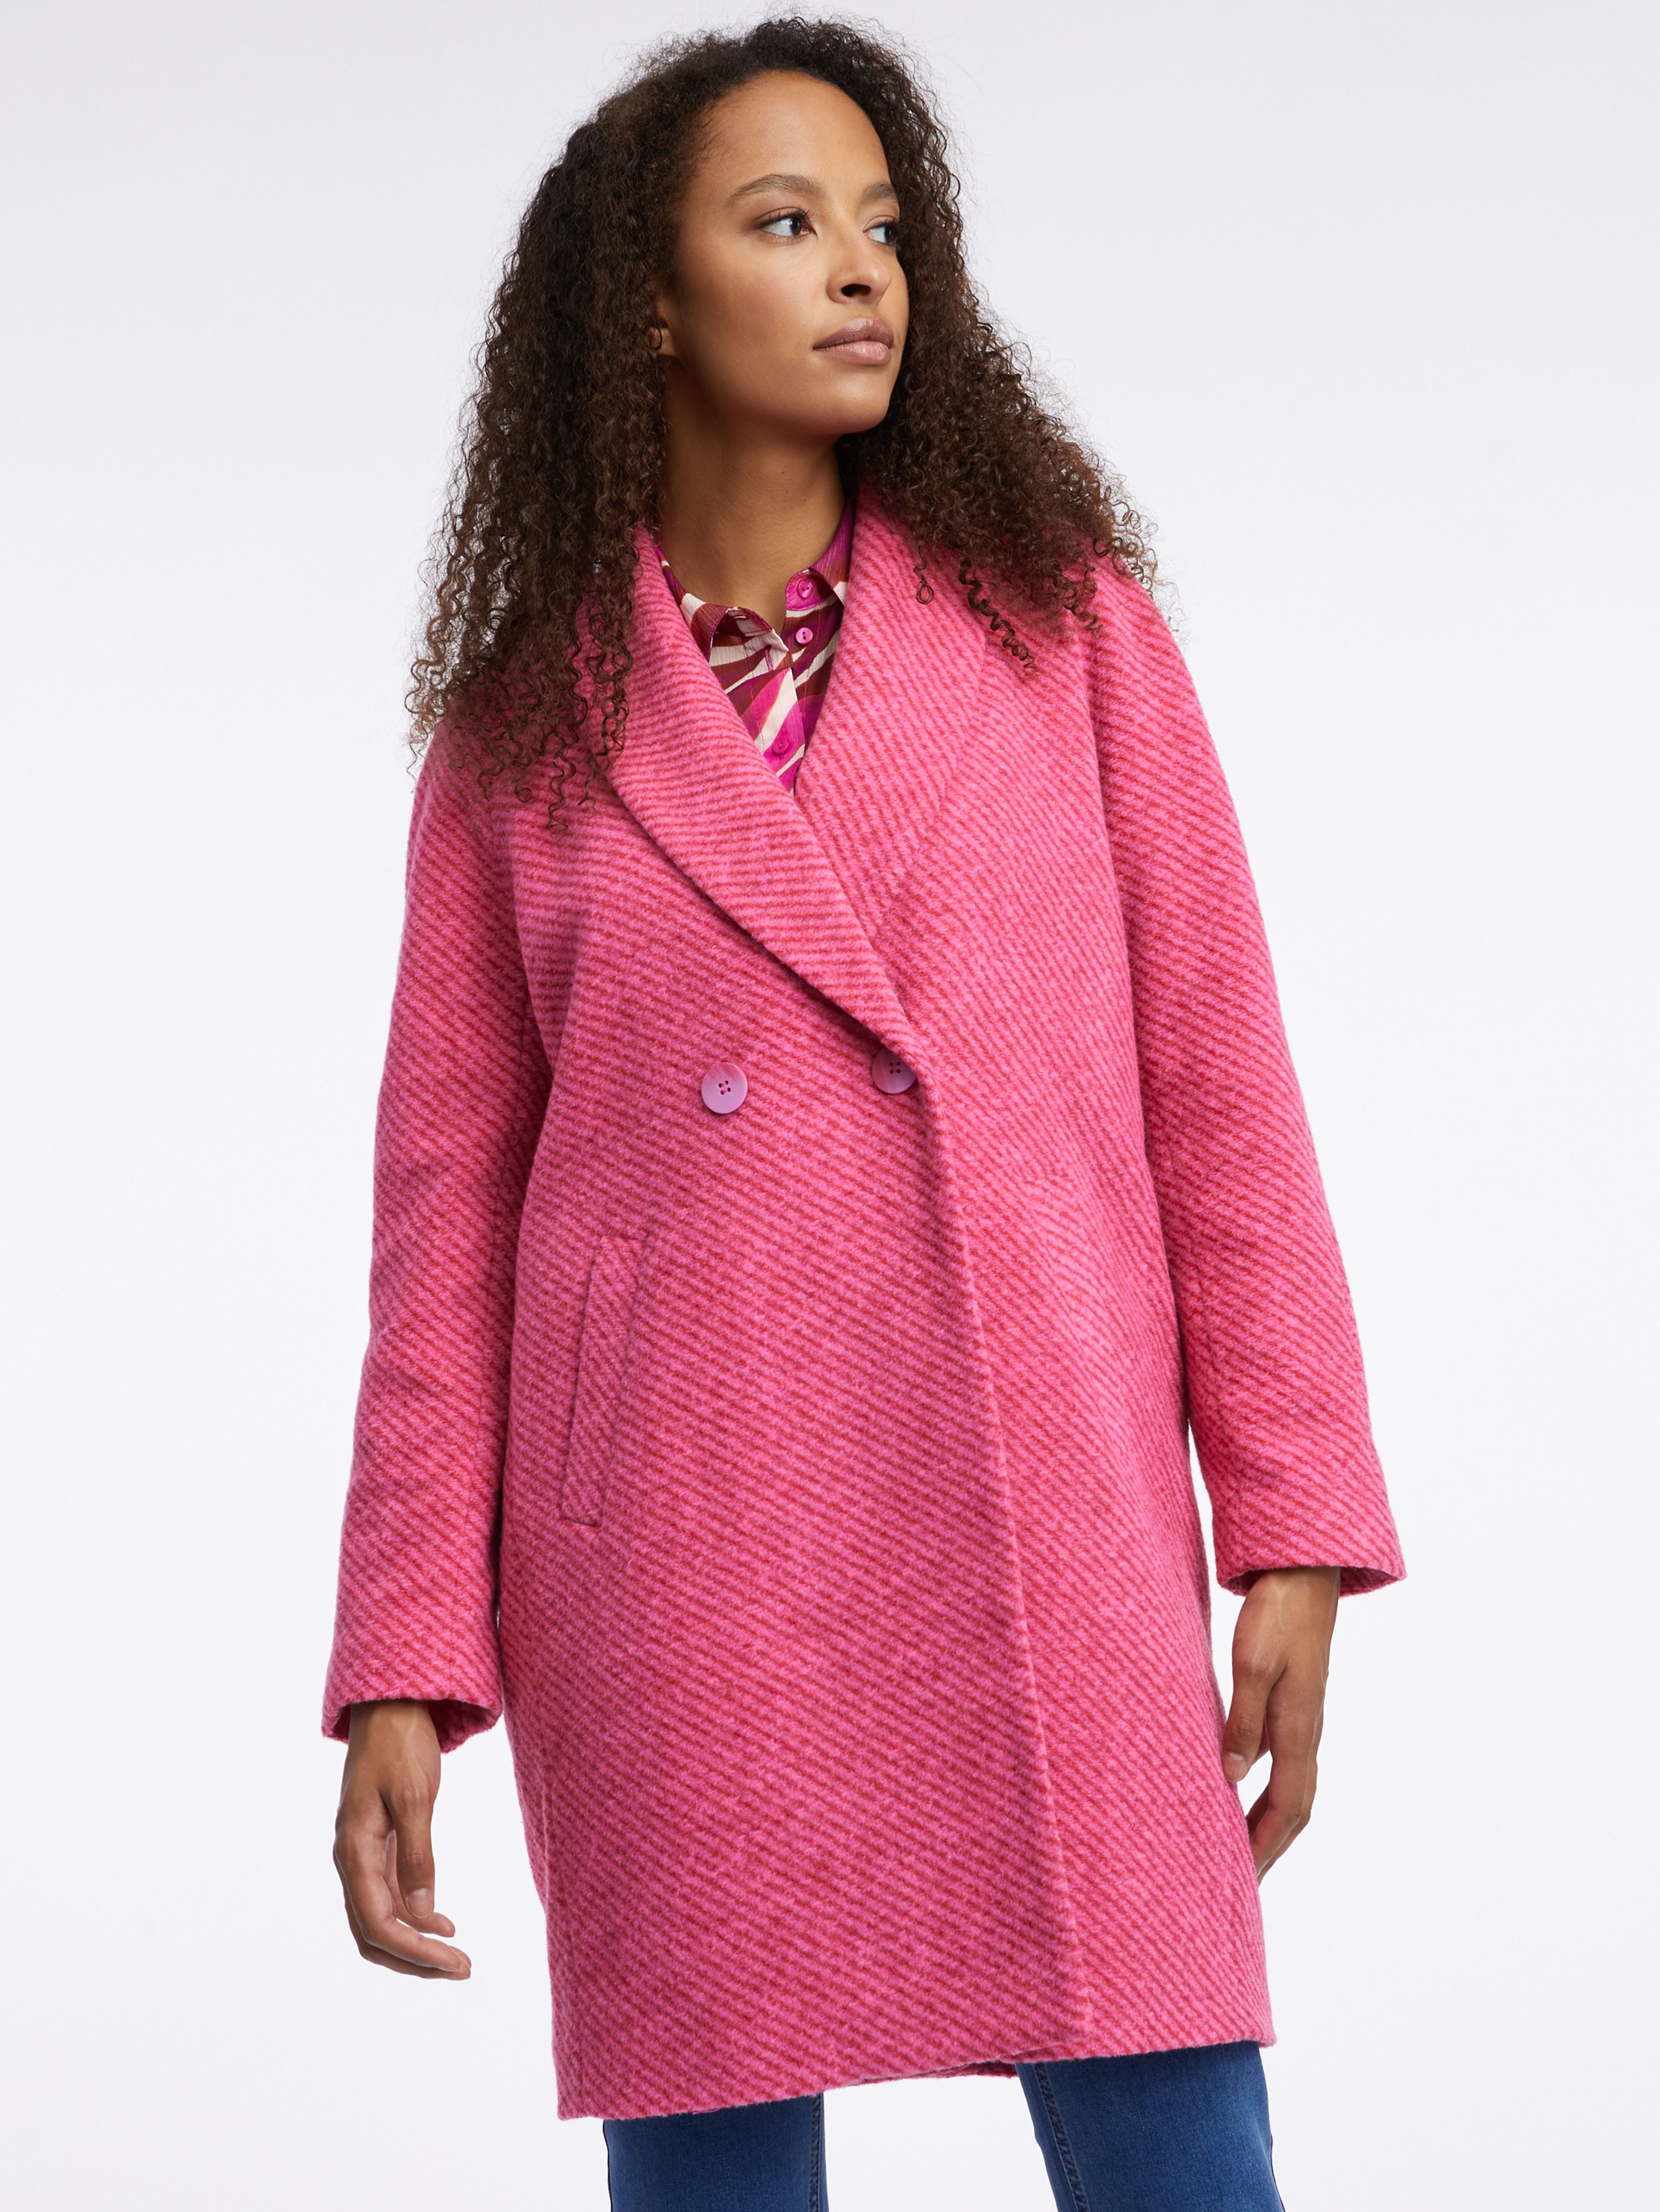 Tmavě růžový dámský kabát s příměsí vlny ORSAY